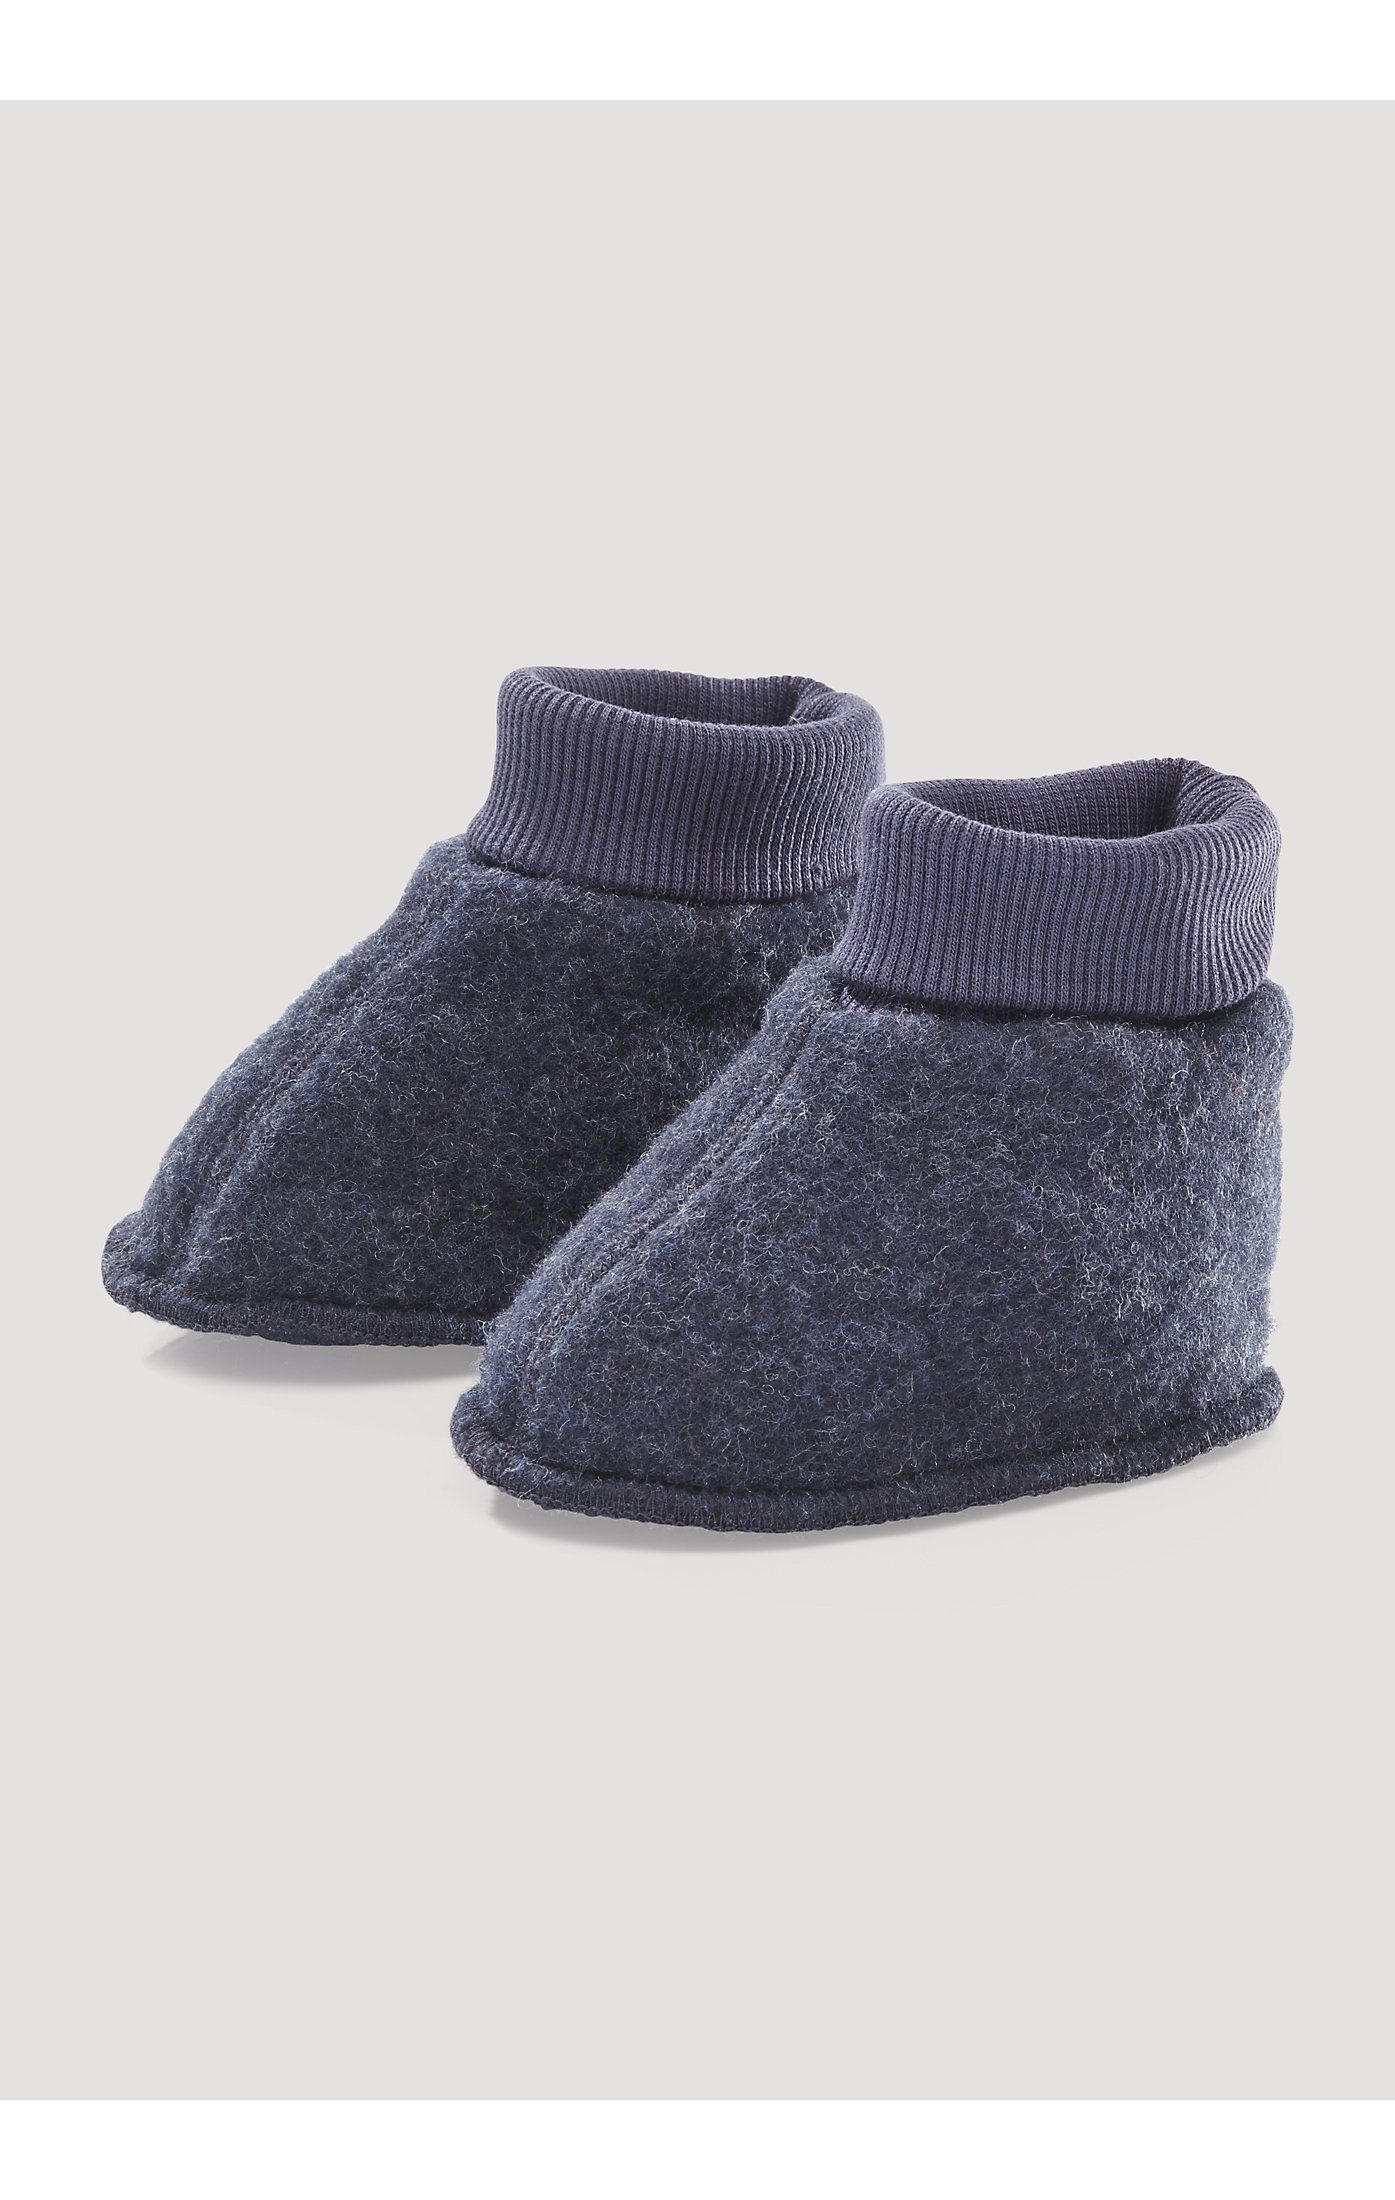 Hessnatur »Wollfleece Schuhe aus reiner Bio-Merinowolle« Plüsch Hausschuhe  online kaufen | OTTO